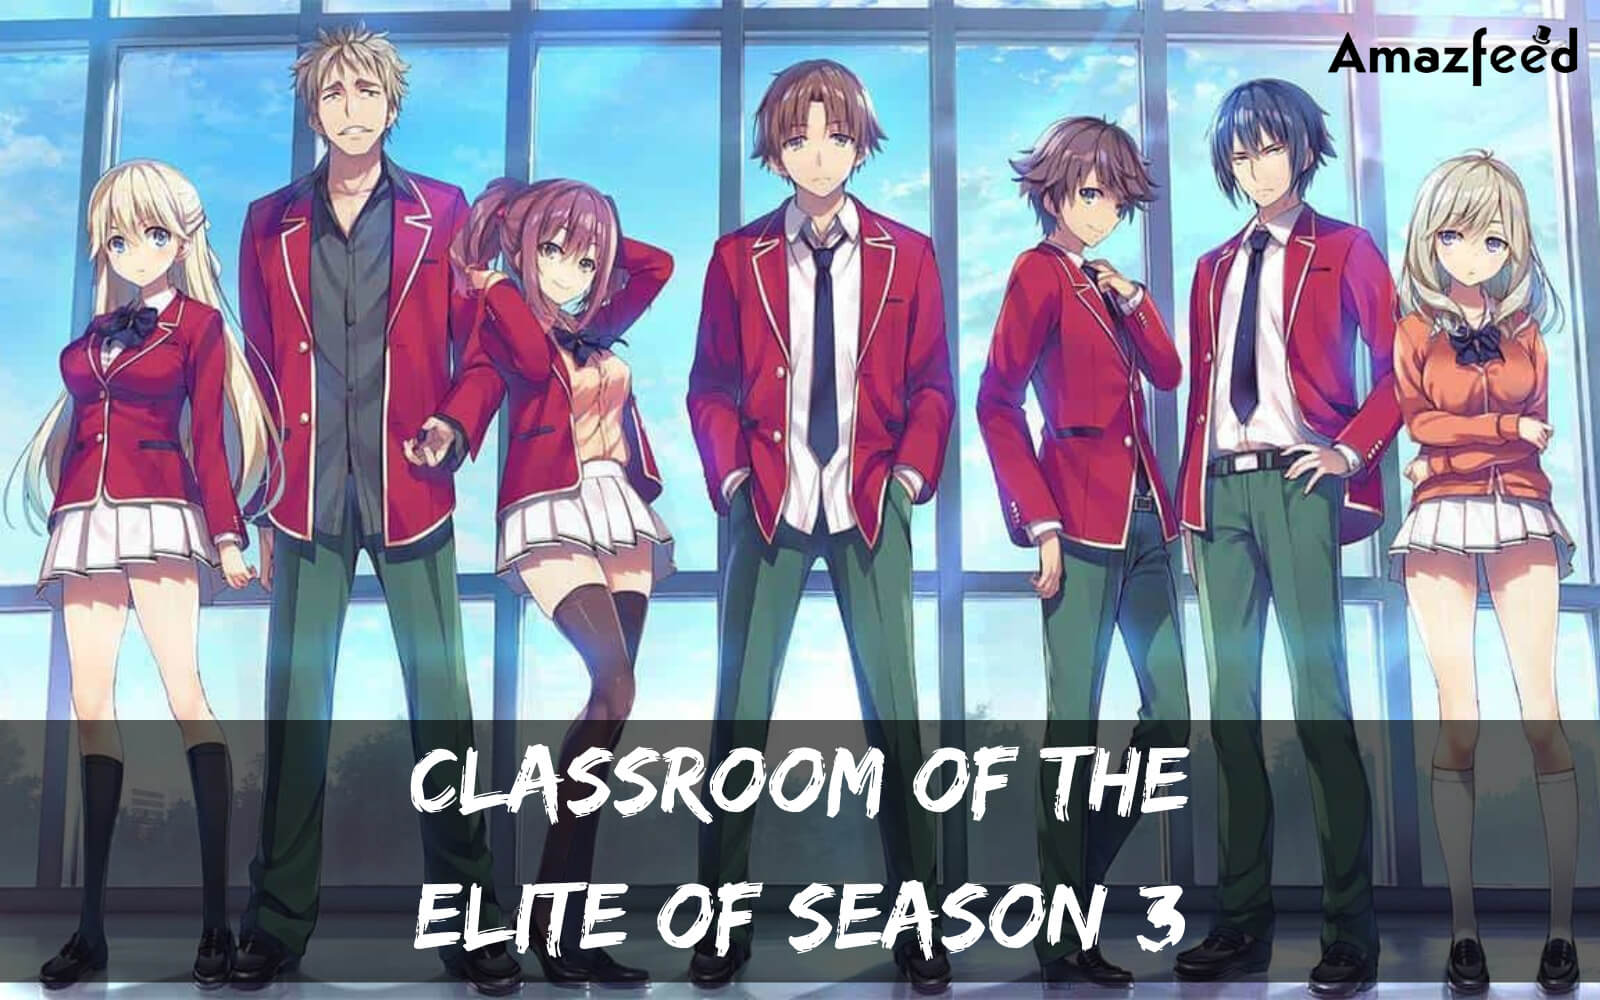 OtakuPT on X: Classroom of the Elite 3 adiado para a Temporada de